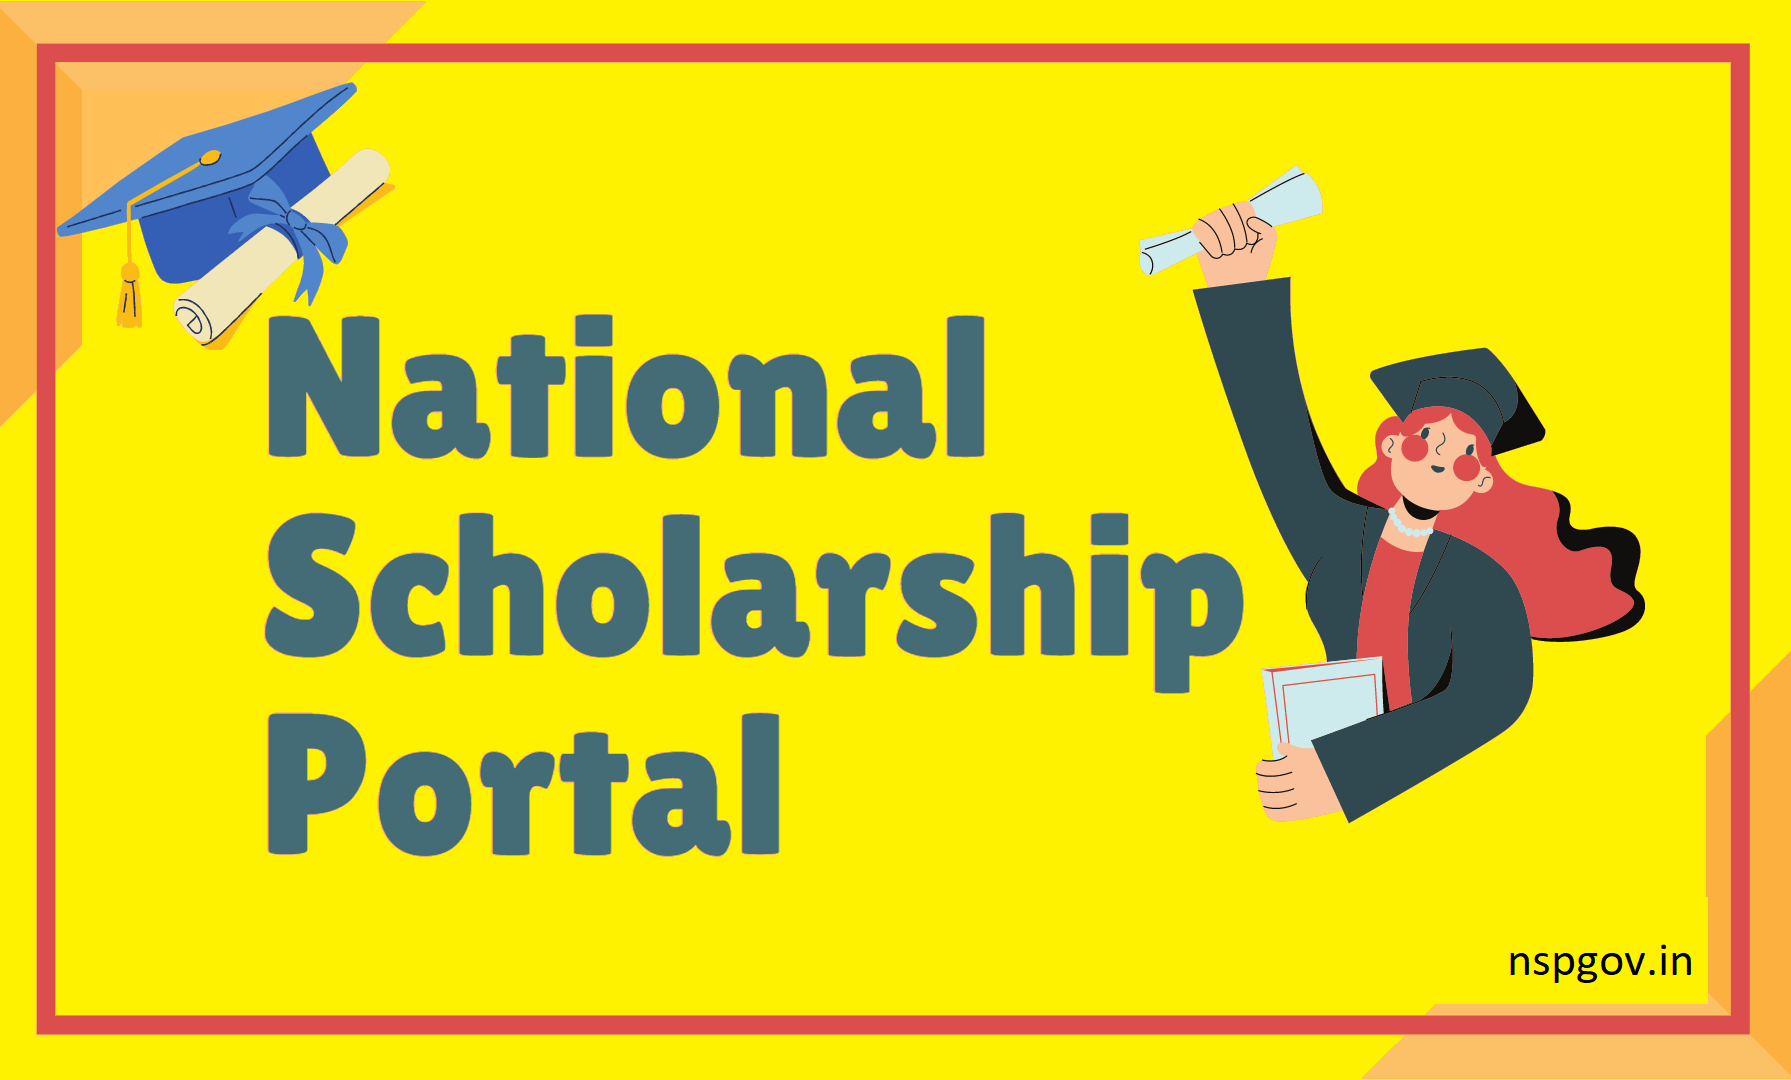 National Portal Scholars scholarship portal, NPS, up scholarship portal, state scholarship portal, post-matric scholarship, scholarship status, scholarship last date, www.scholarships.gov.in 2020-21,